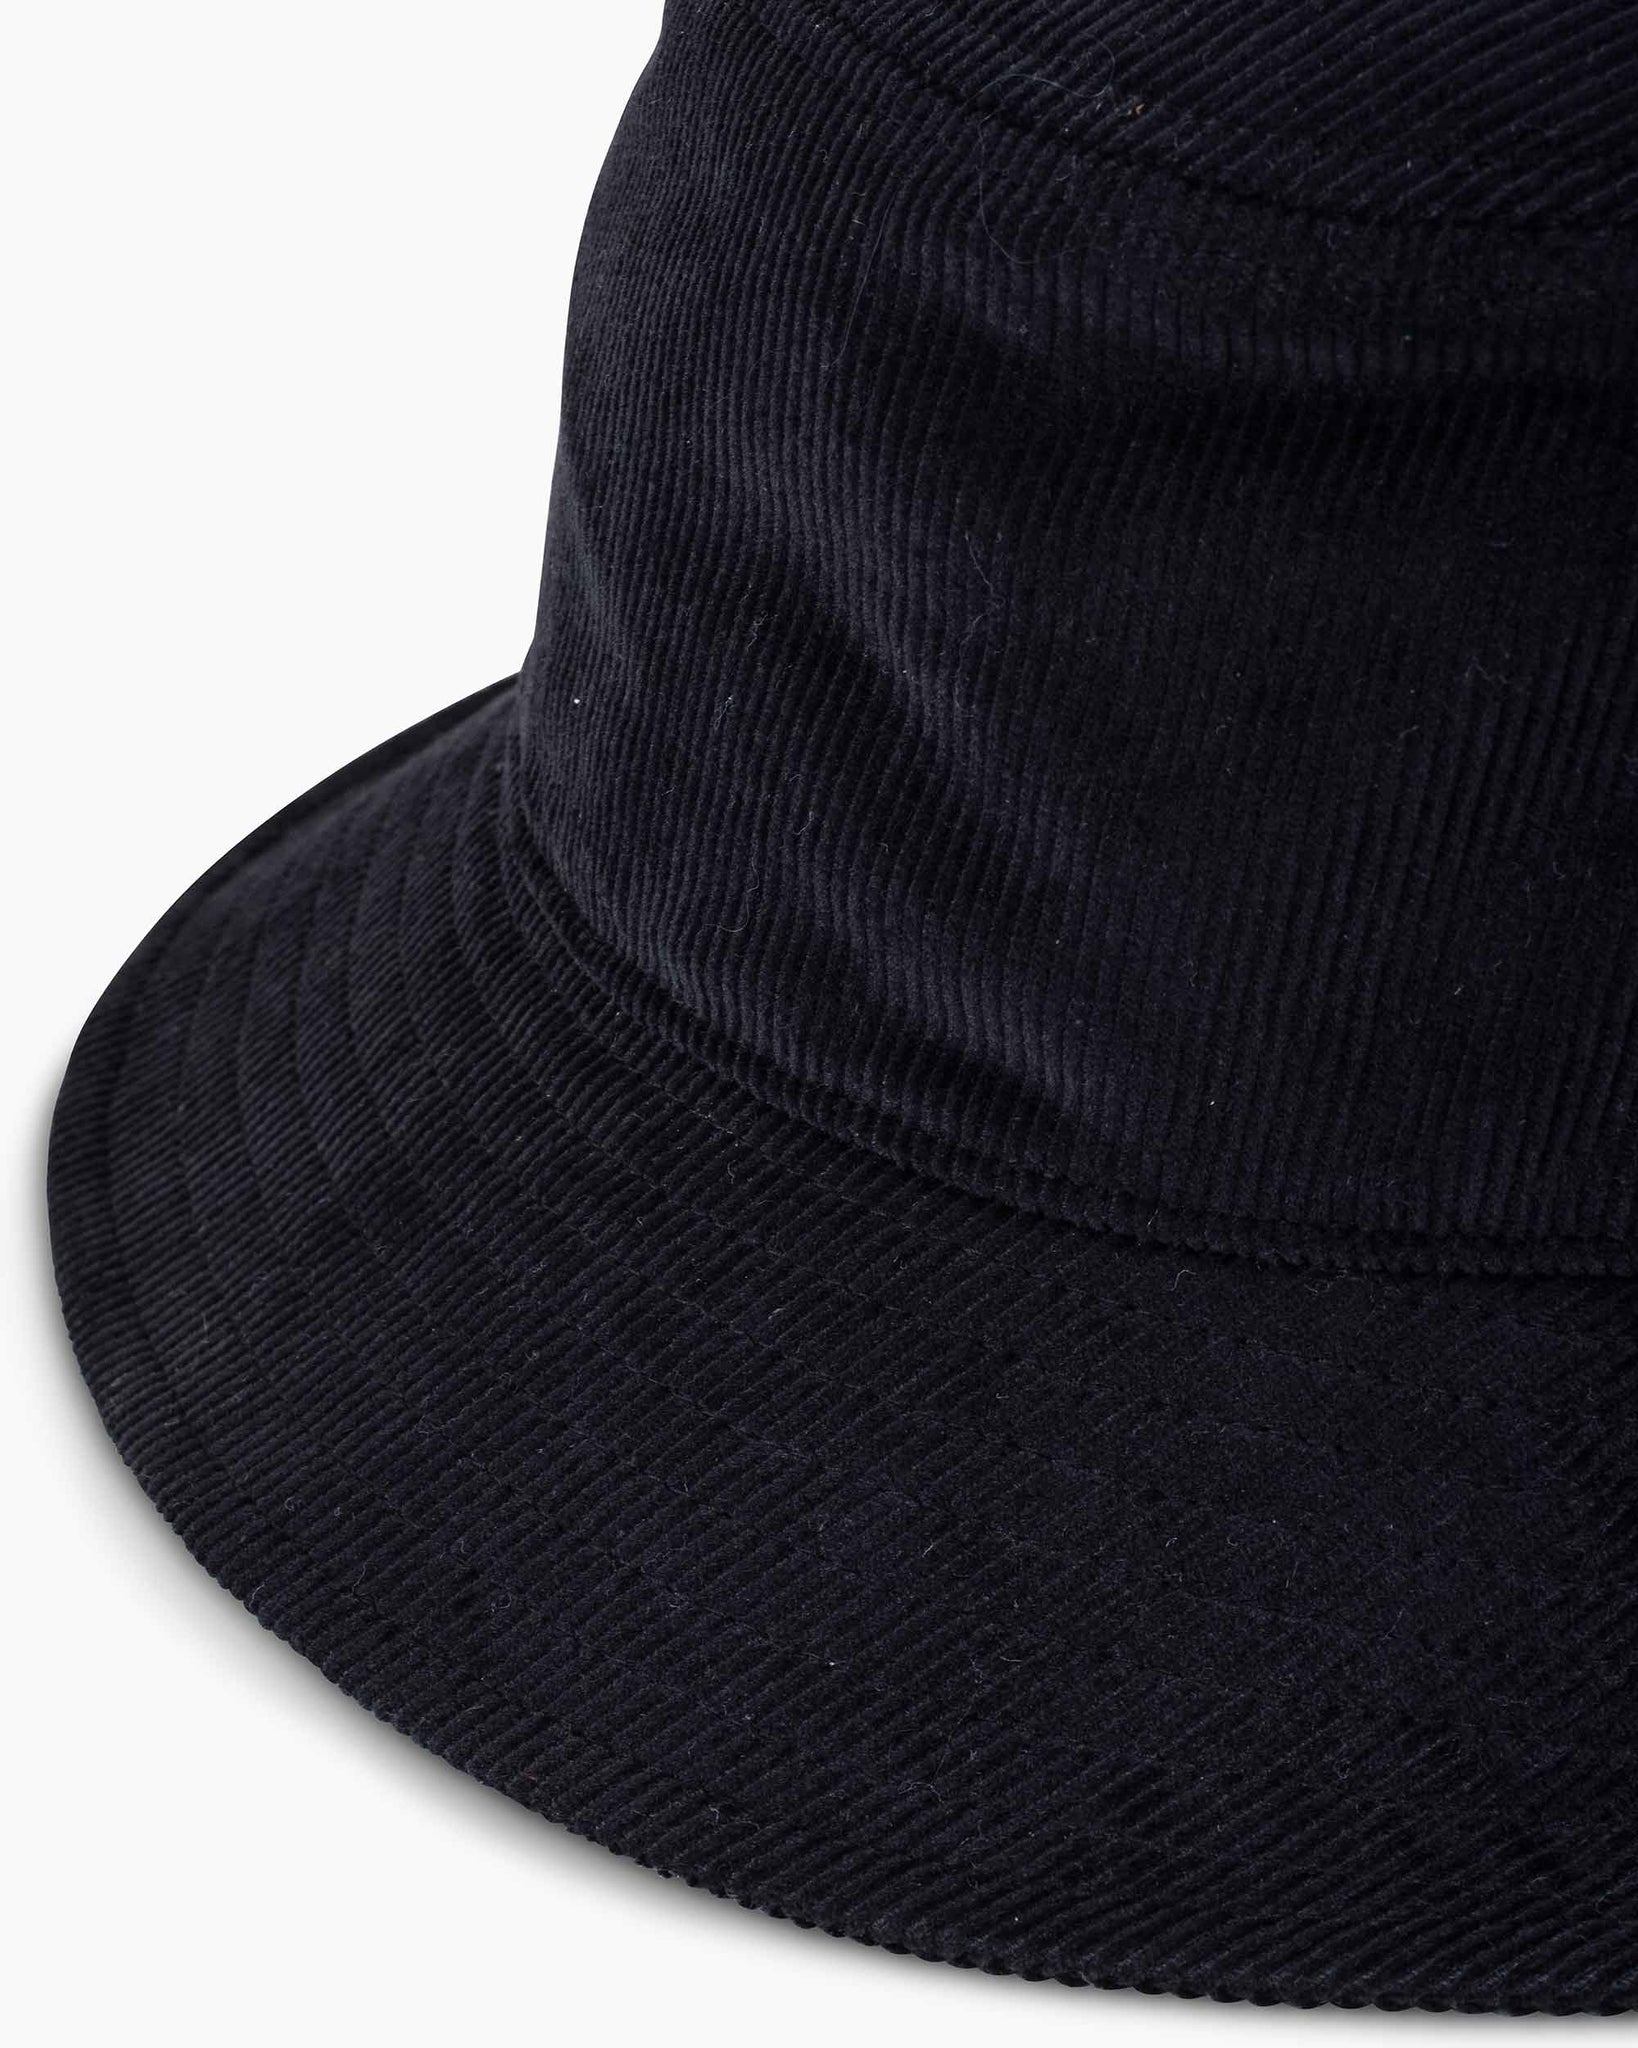 Found Feather Bucket Hat Black Details